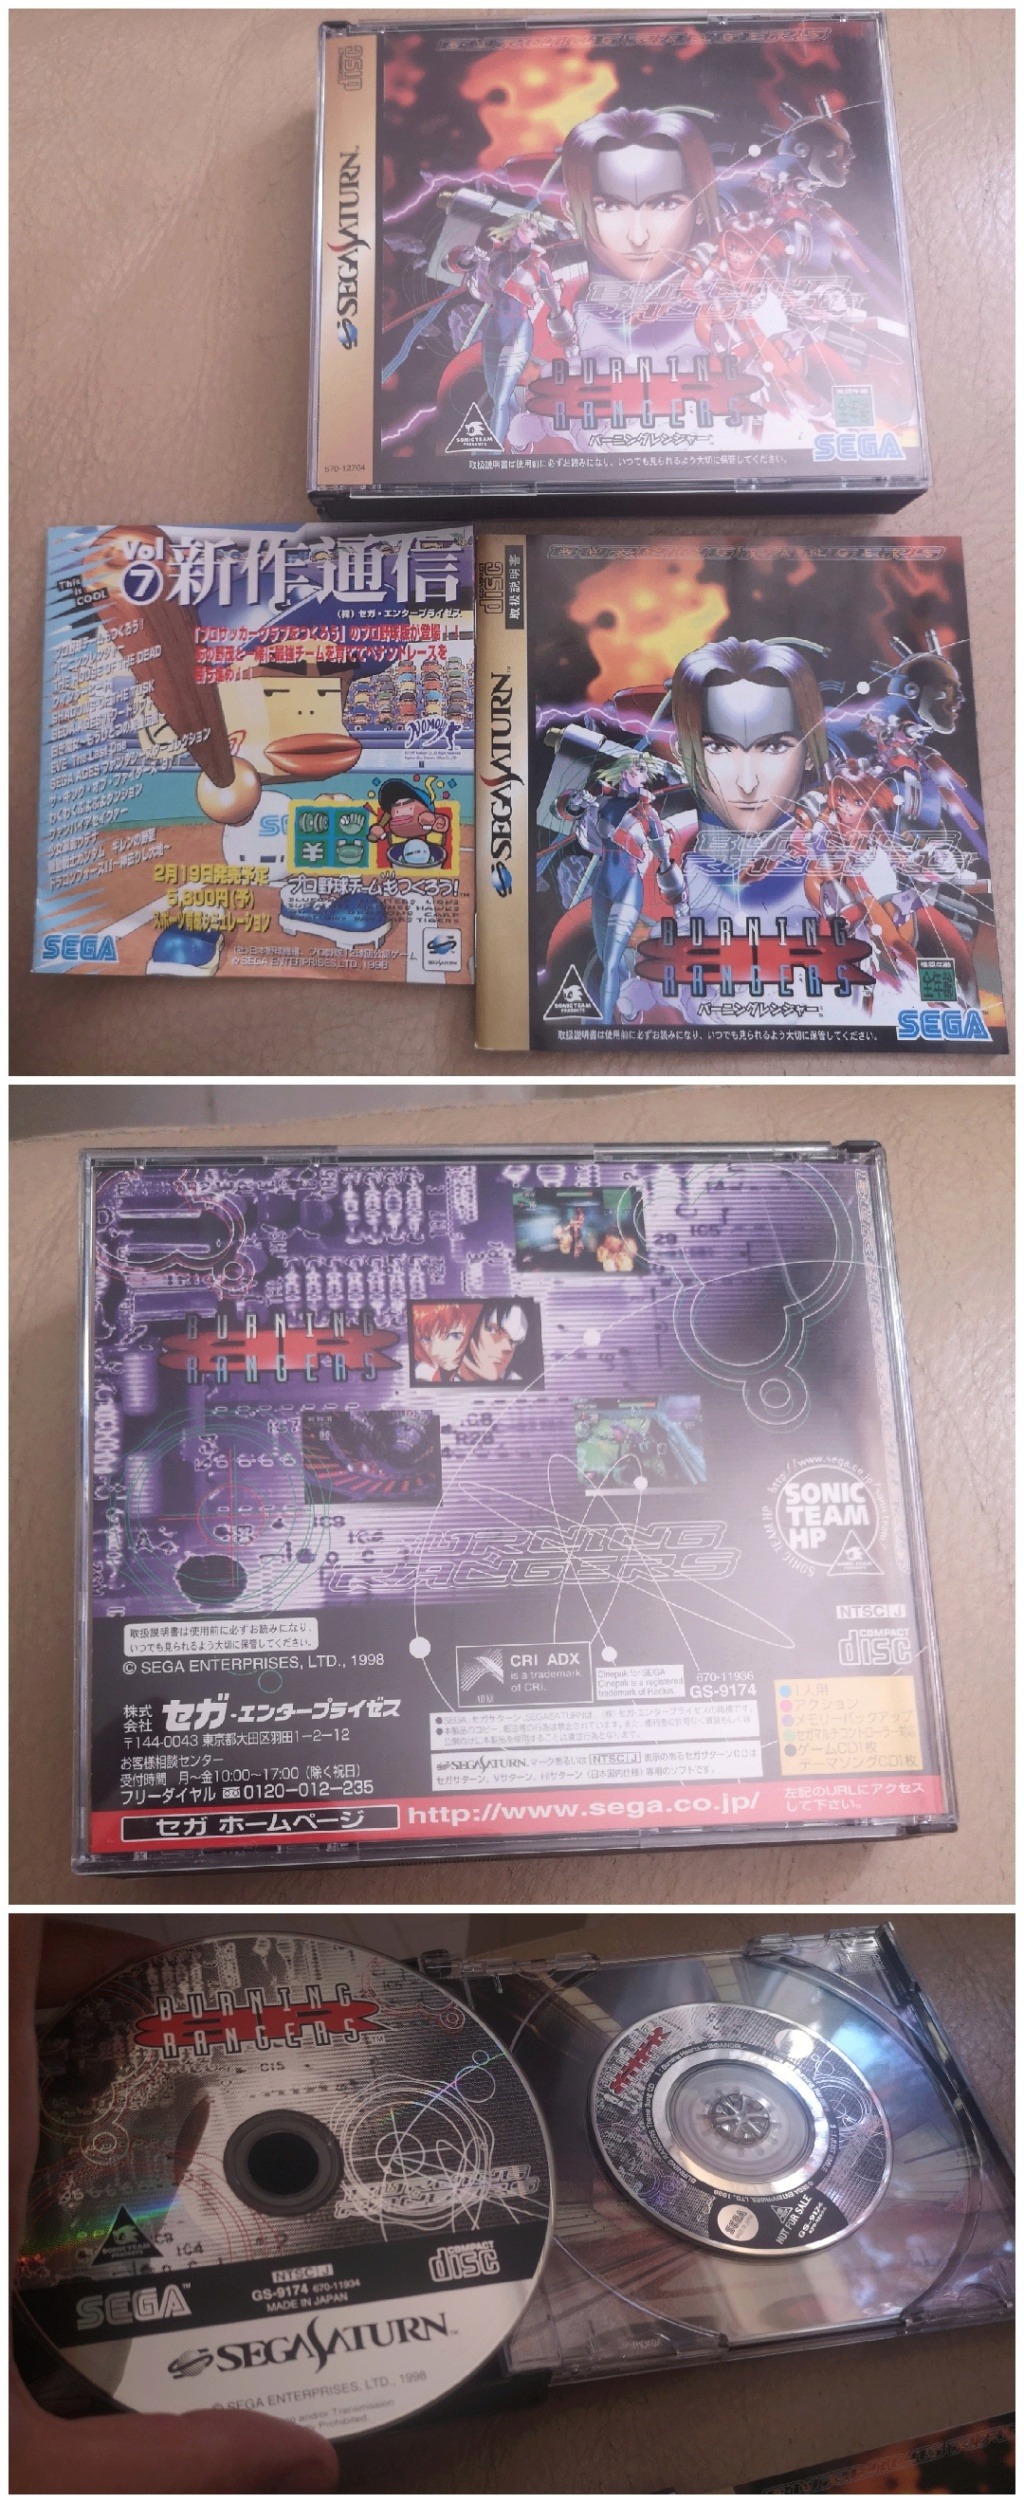 [VDS] Console GameCube jap orange, Sega 32x jap etc  - Page 6 Collag14